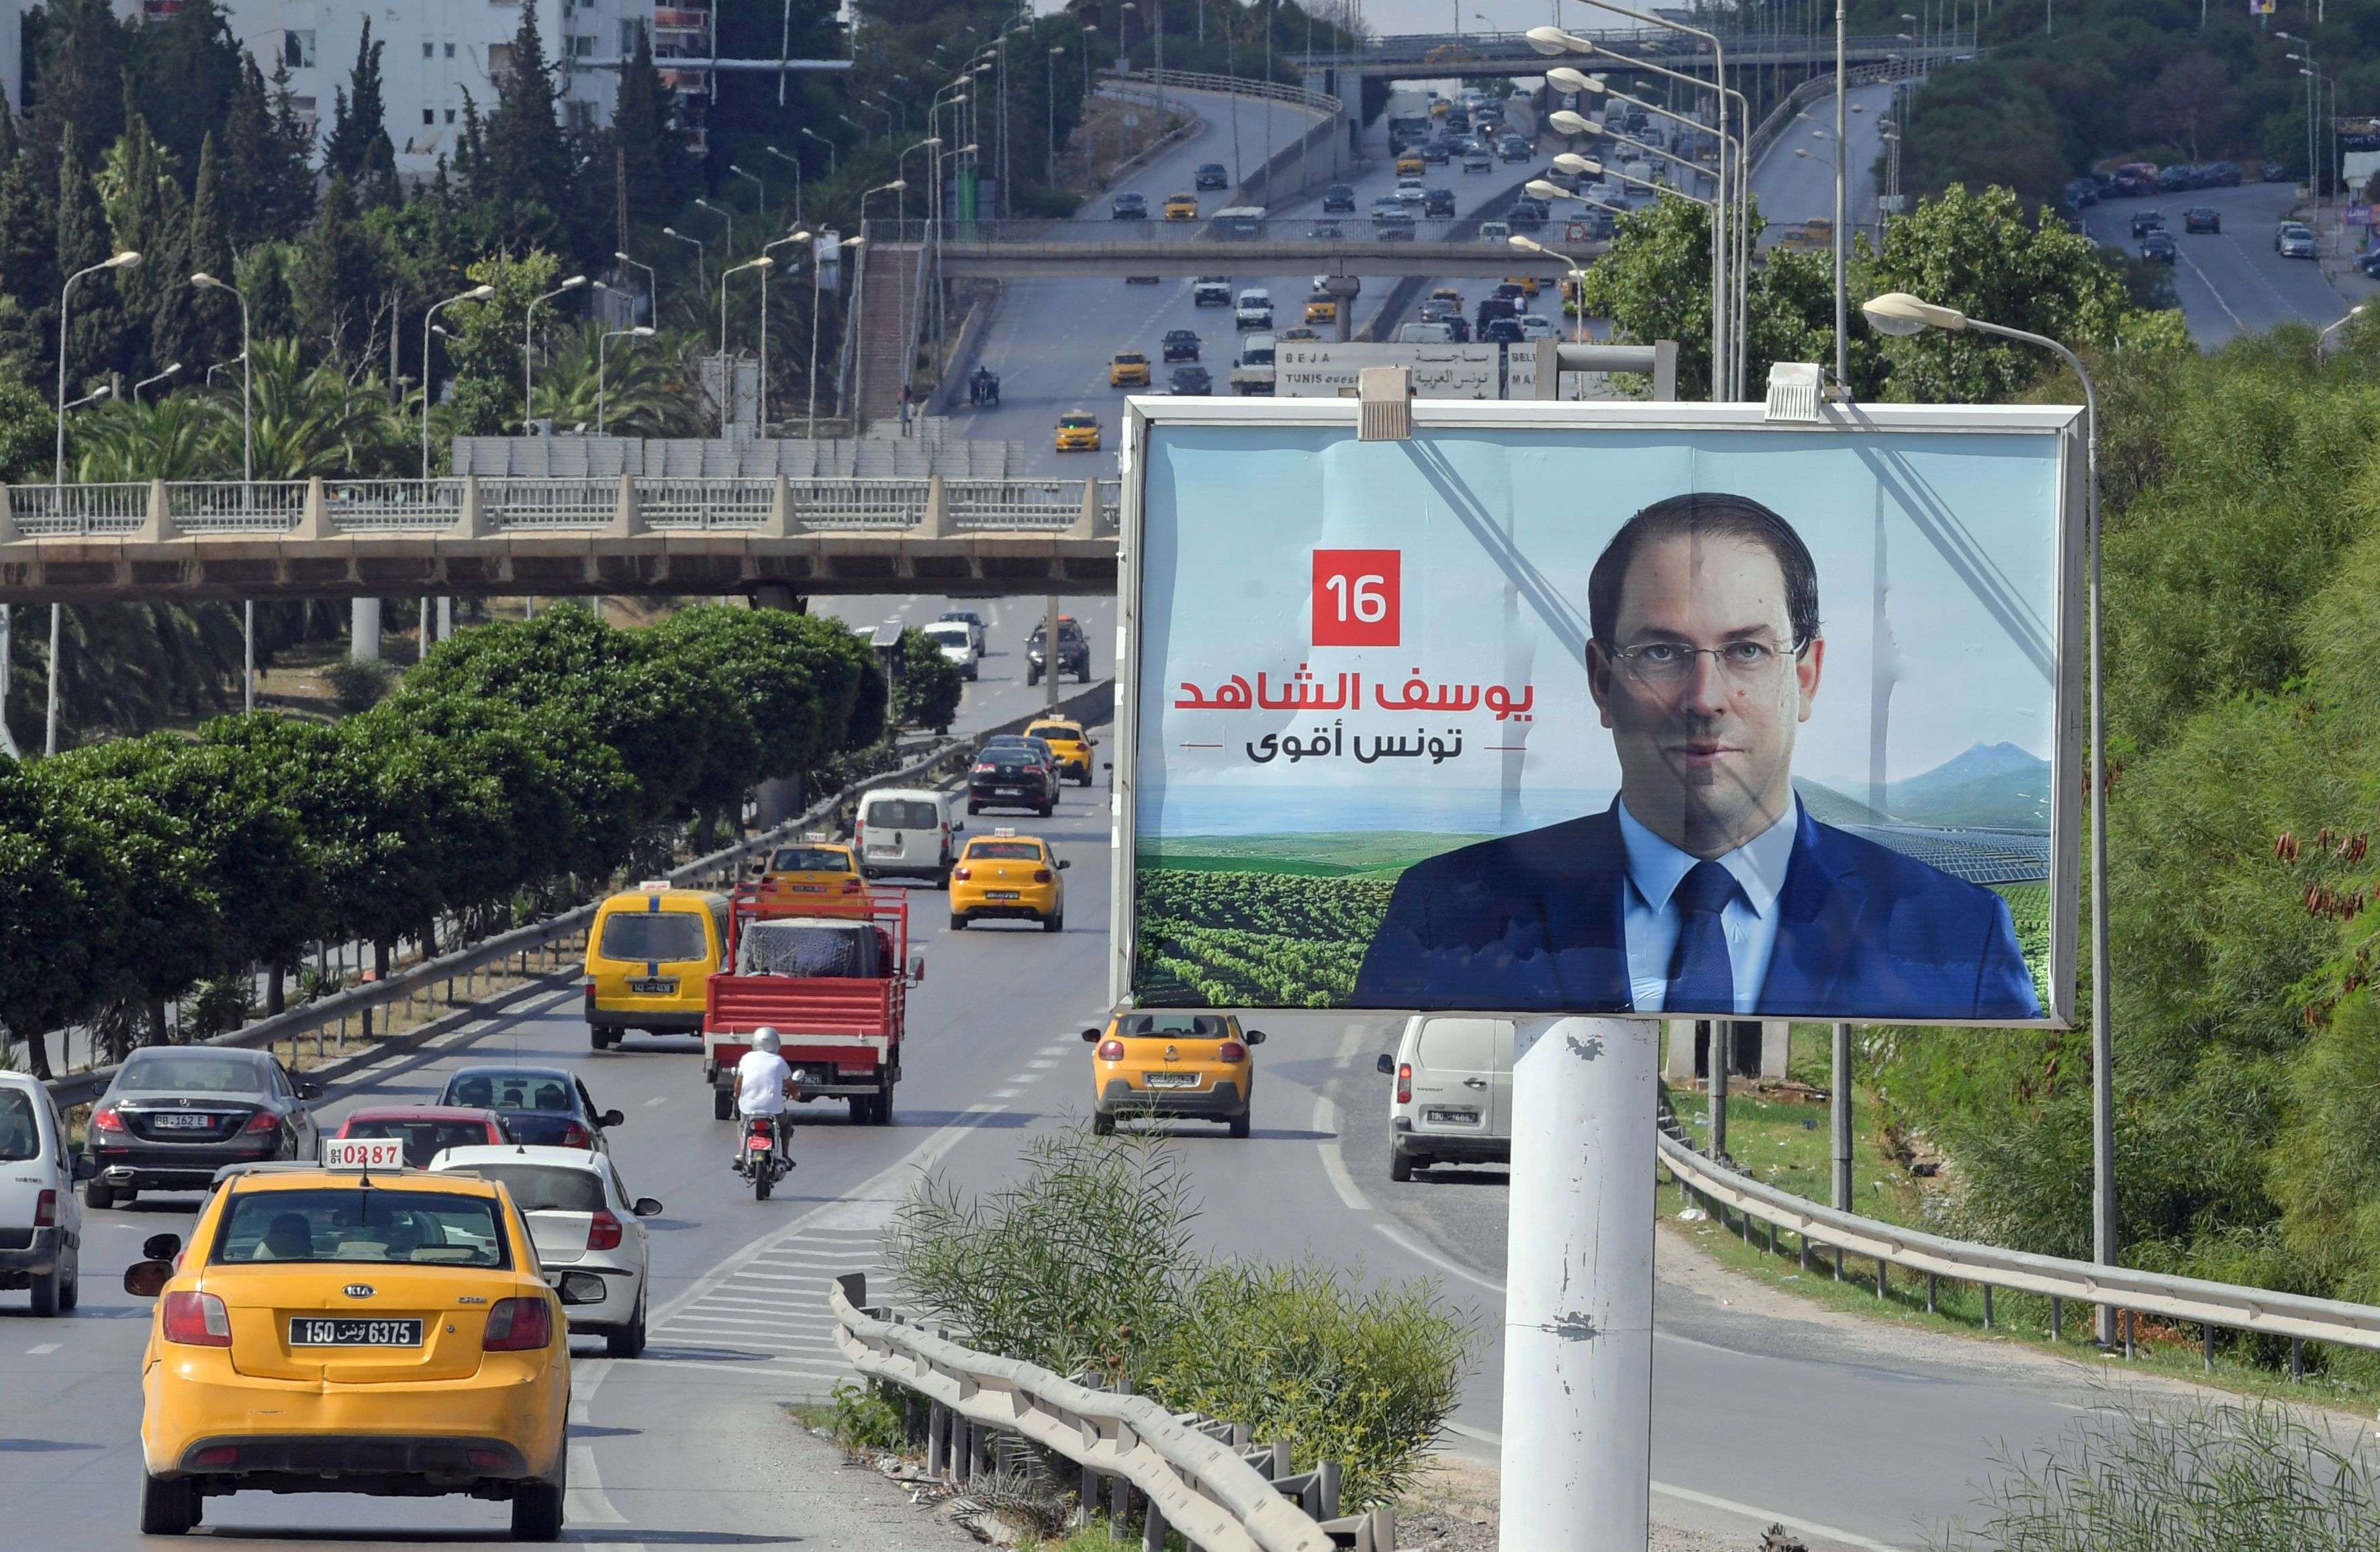 لافتة انتخابية للمرشح الرئاسي يوسف الشاهد